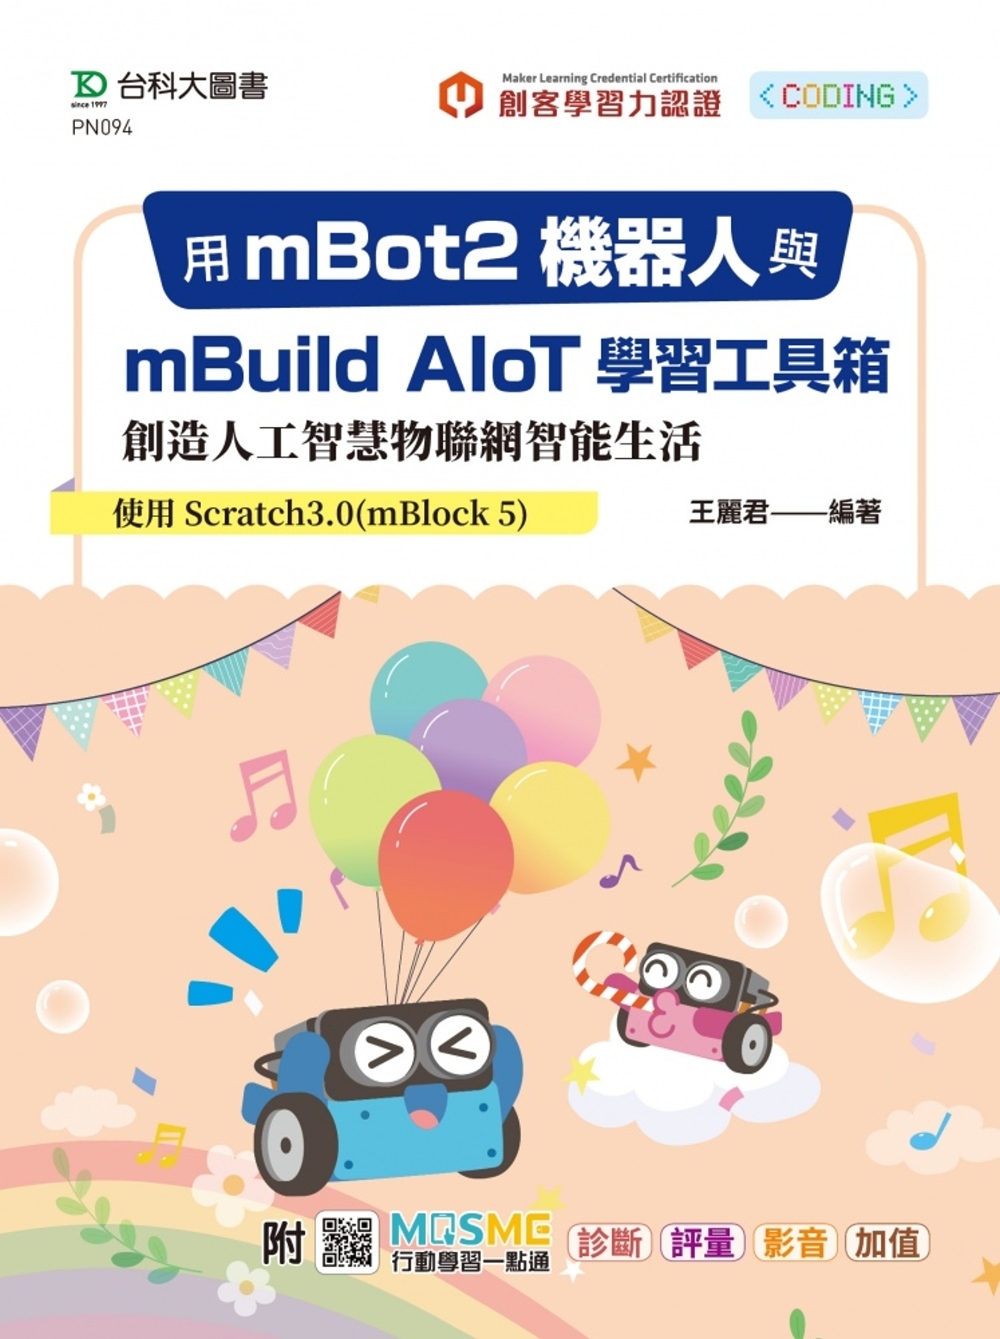 用mBot2機器人與mBuild AIoT學習工具箱創造人工智慧物聯網智能生活-使用Scratch3.0(mBlock 5) - 附MOSME行動學習一點通：診斷.評量.影音.加值